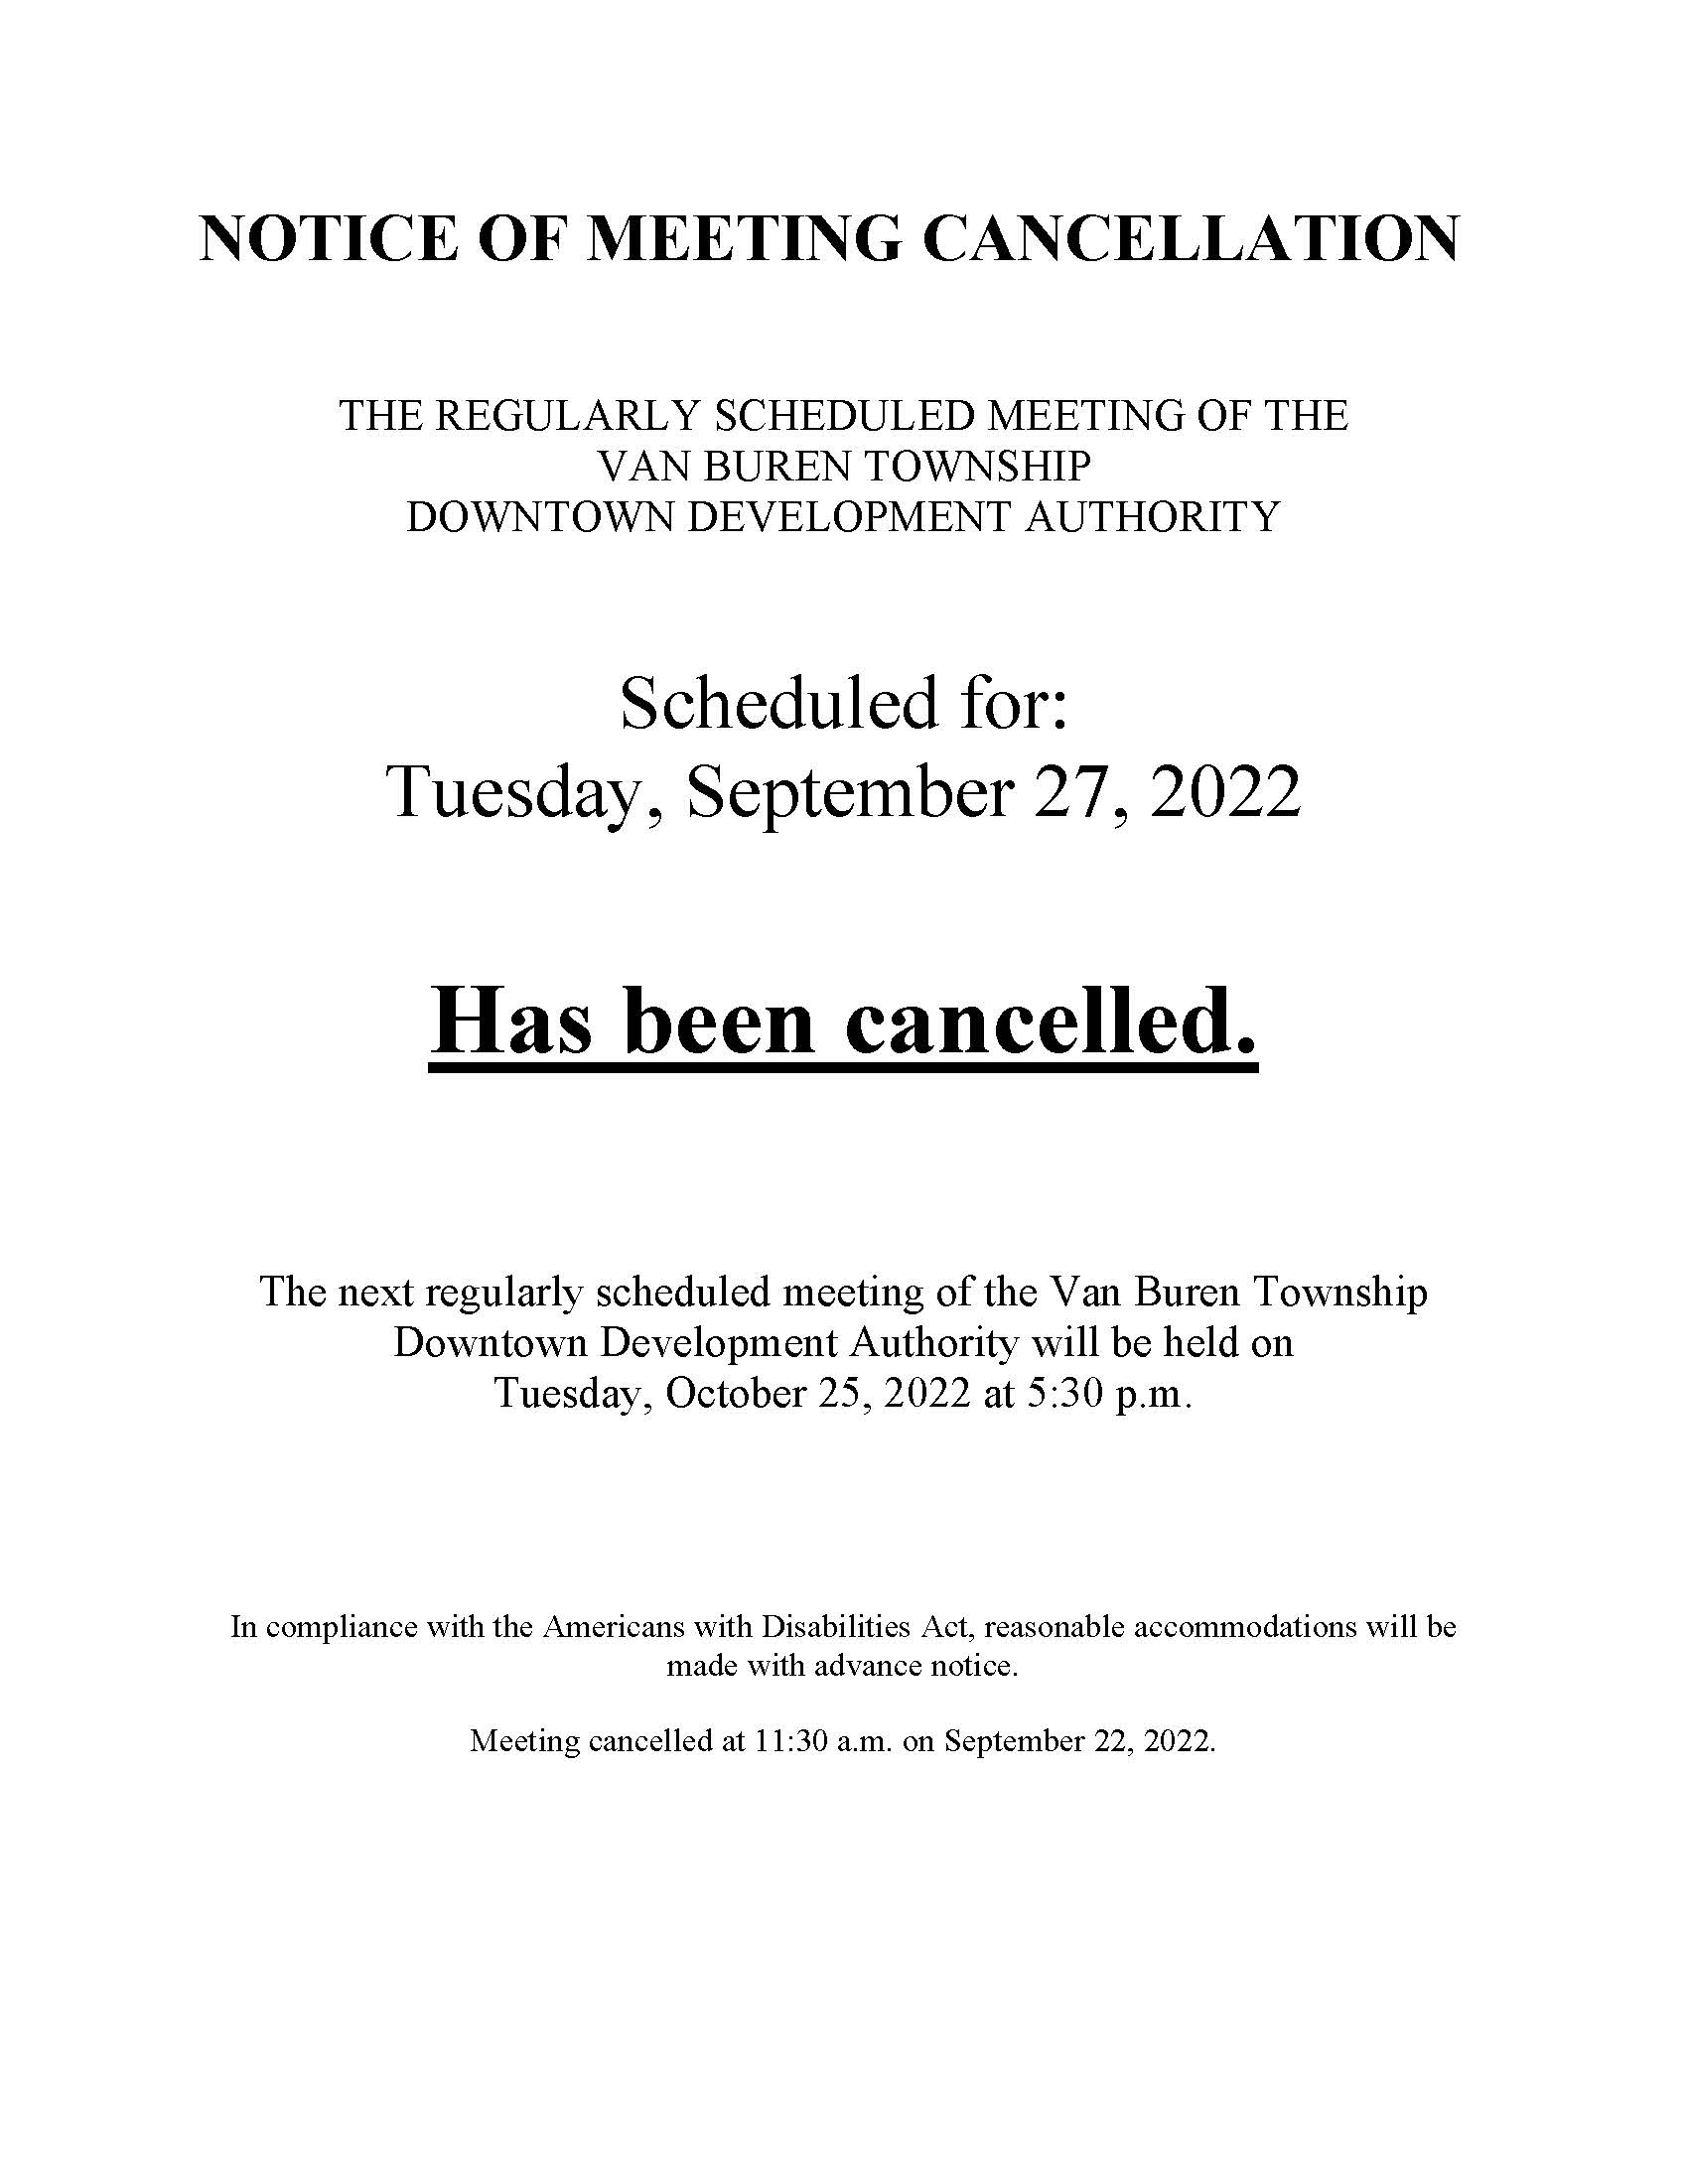 DDA September 27 2022 cancellation notice